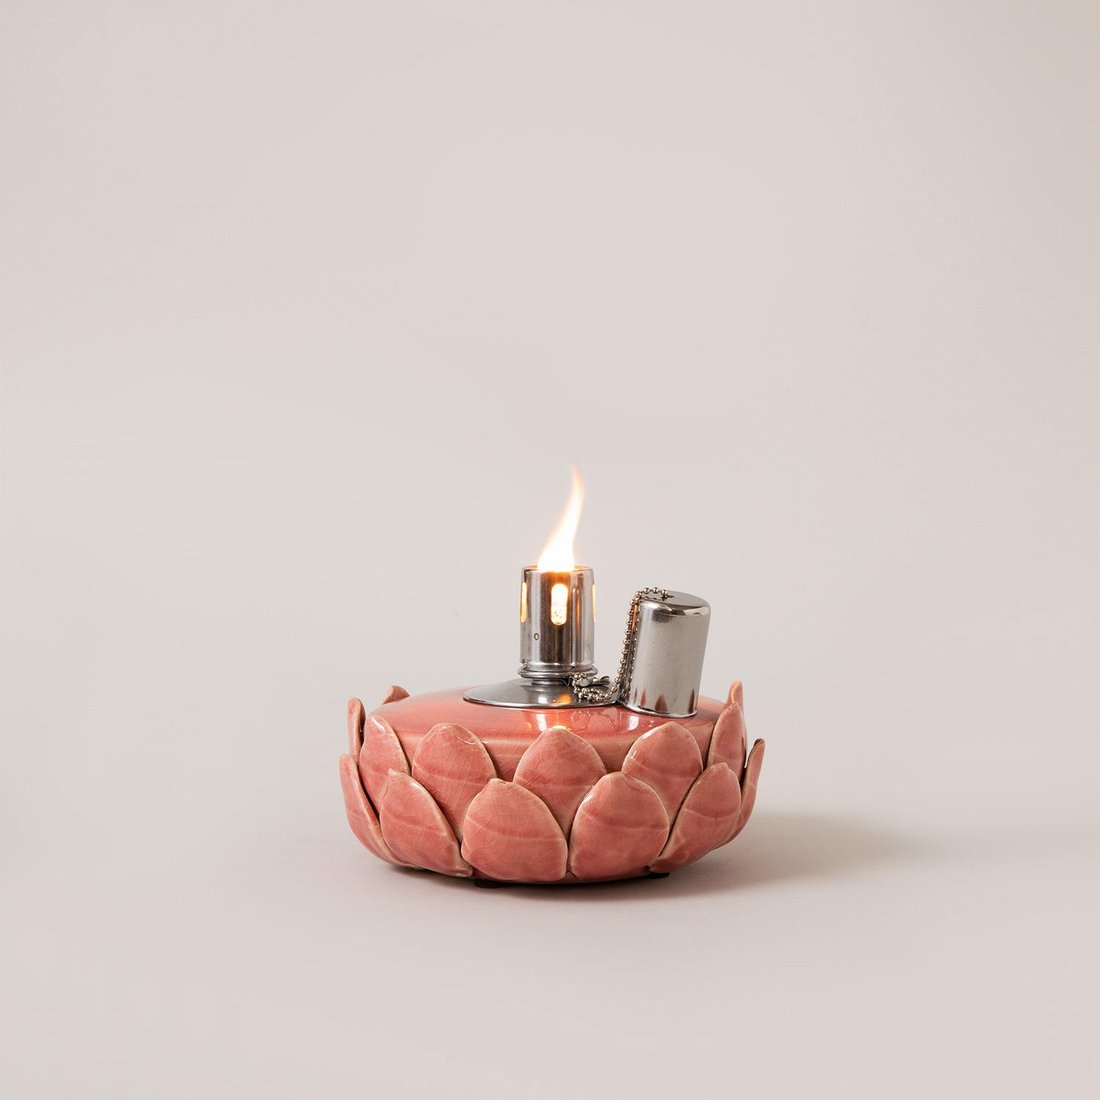 Лампа ароматическая LOTOS, с керамики, для масел, розовая.